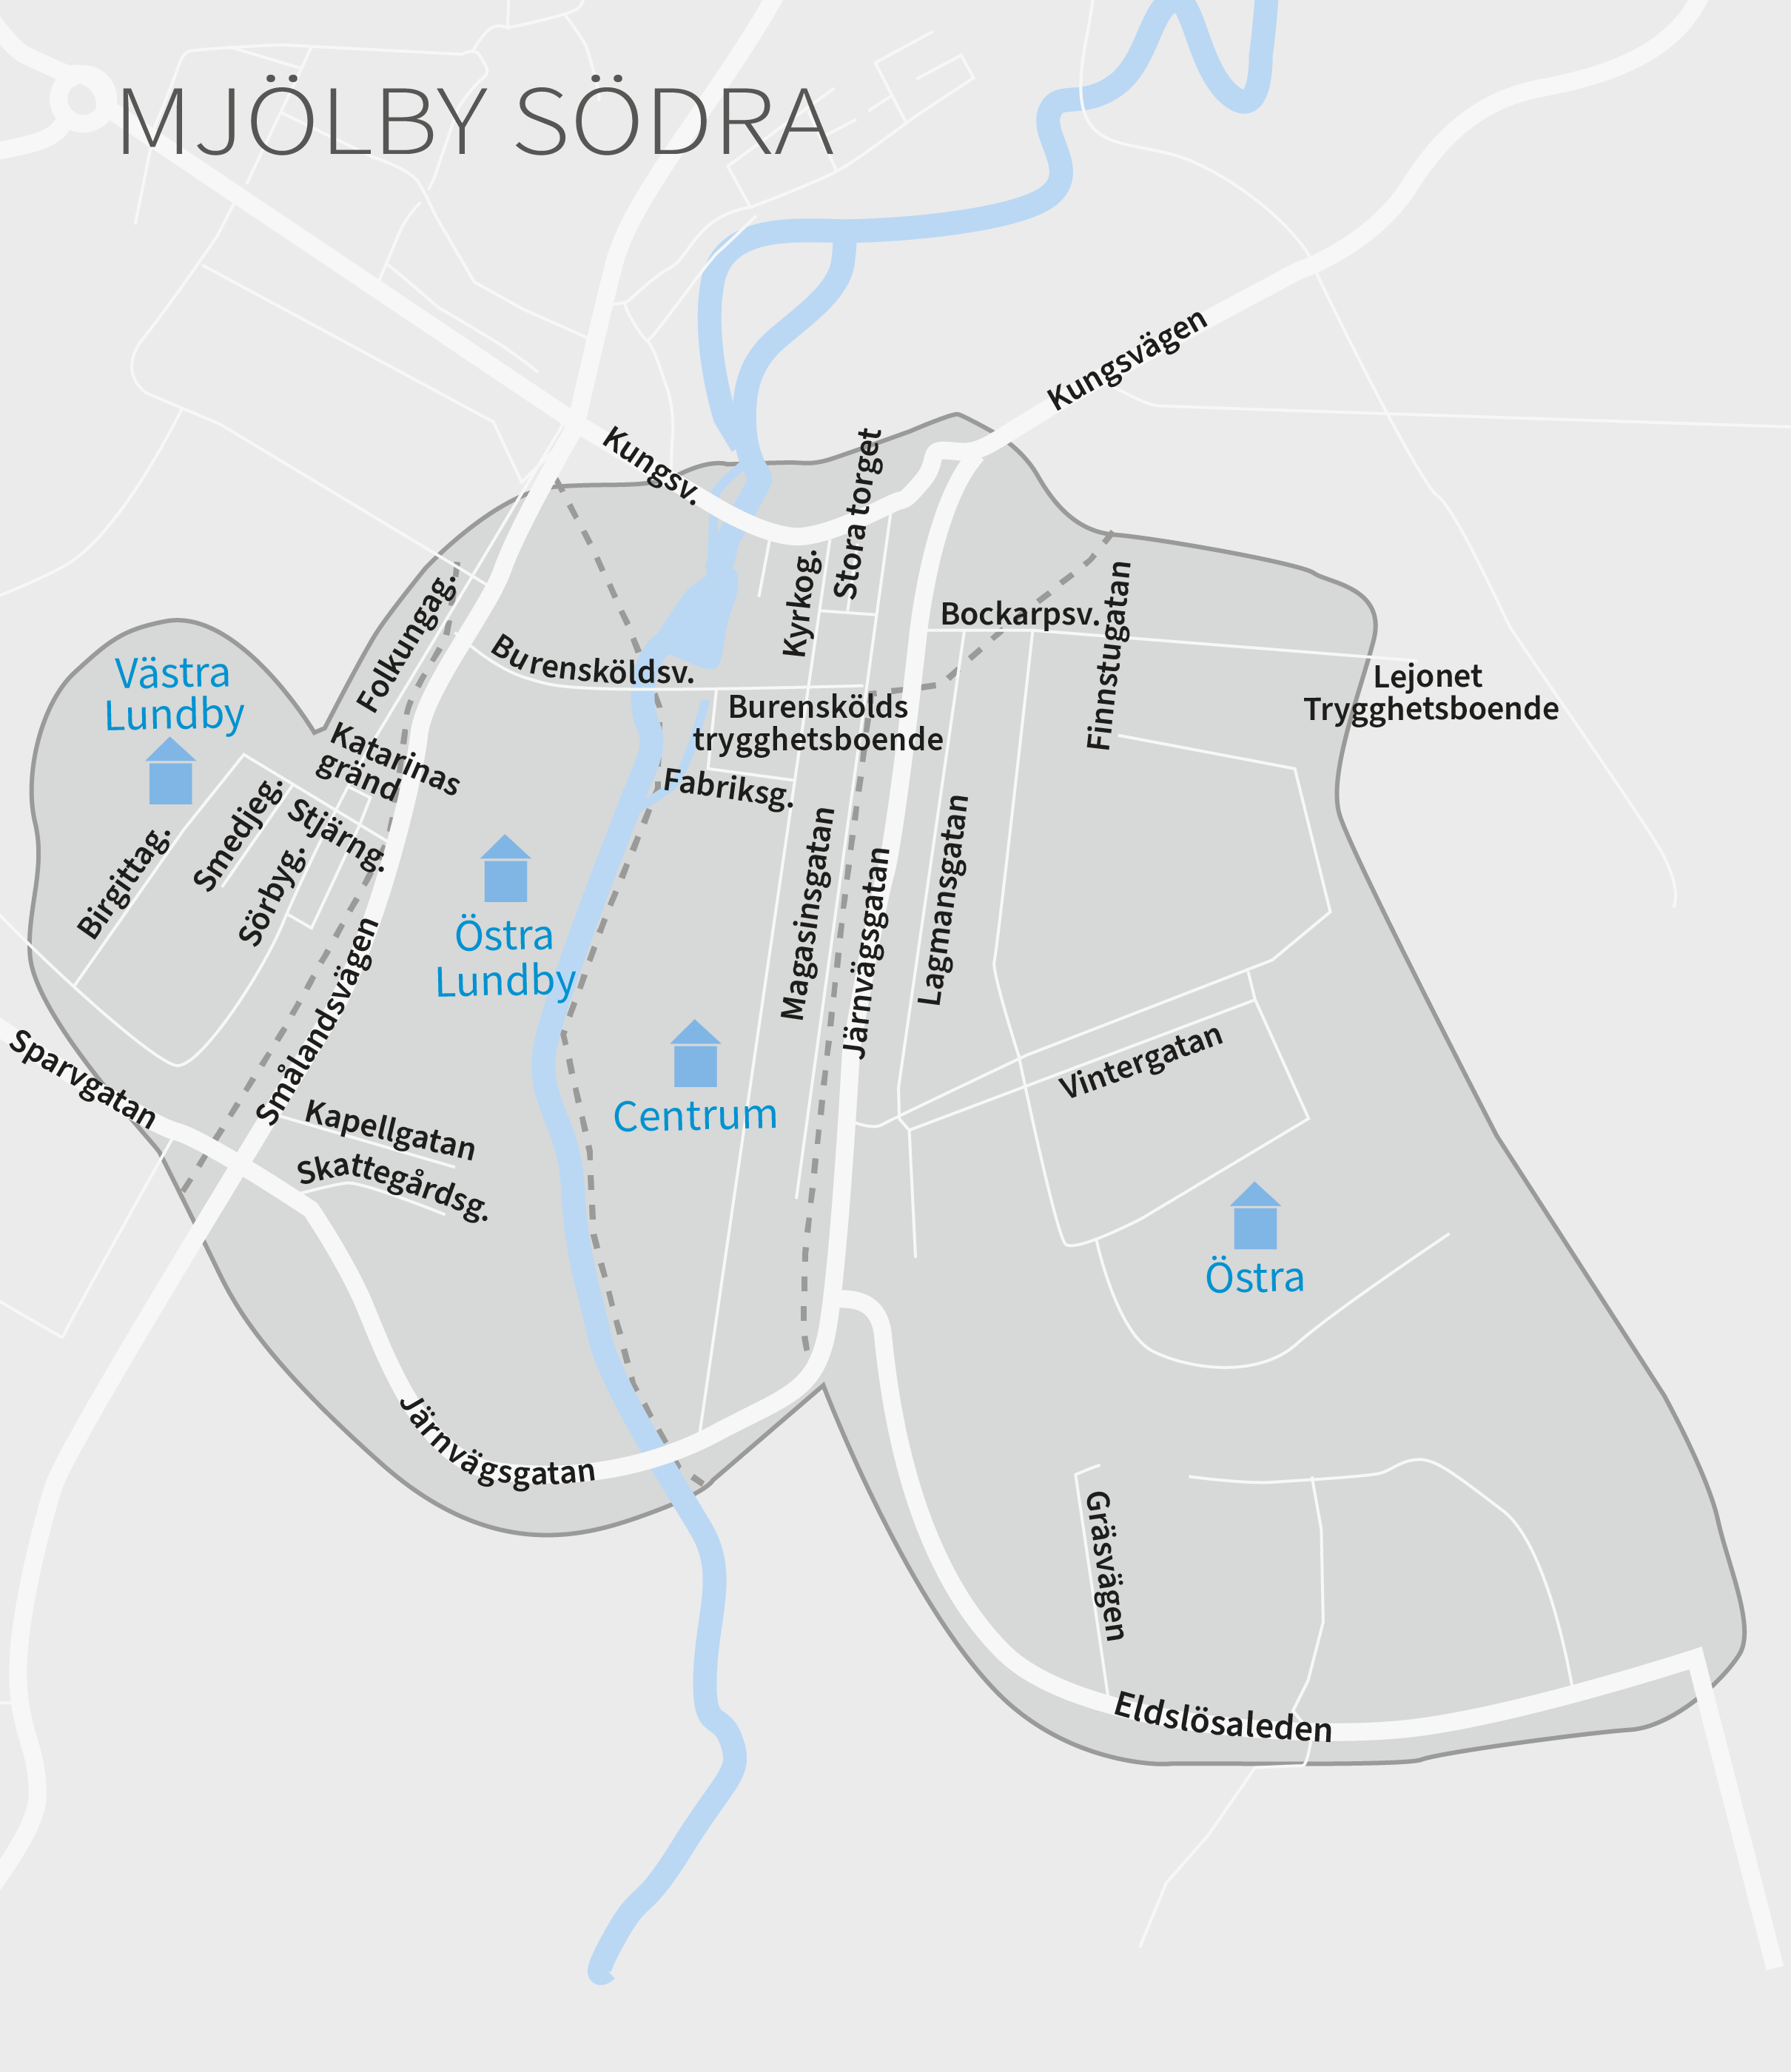 karta över område mjölby södra